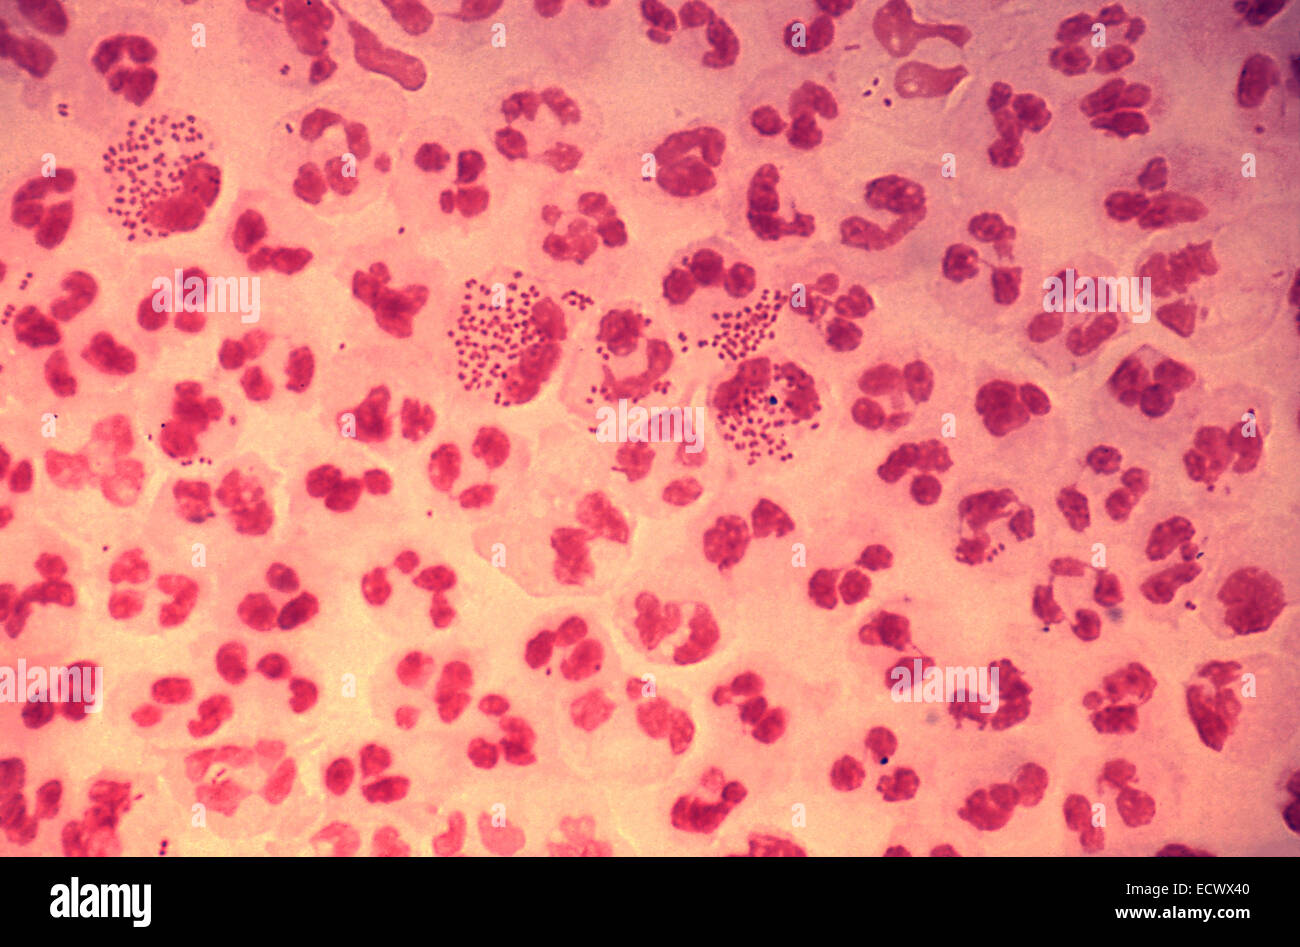 Histopathology of gonococcal urethritis. Stock Photo